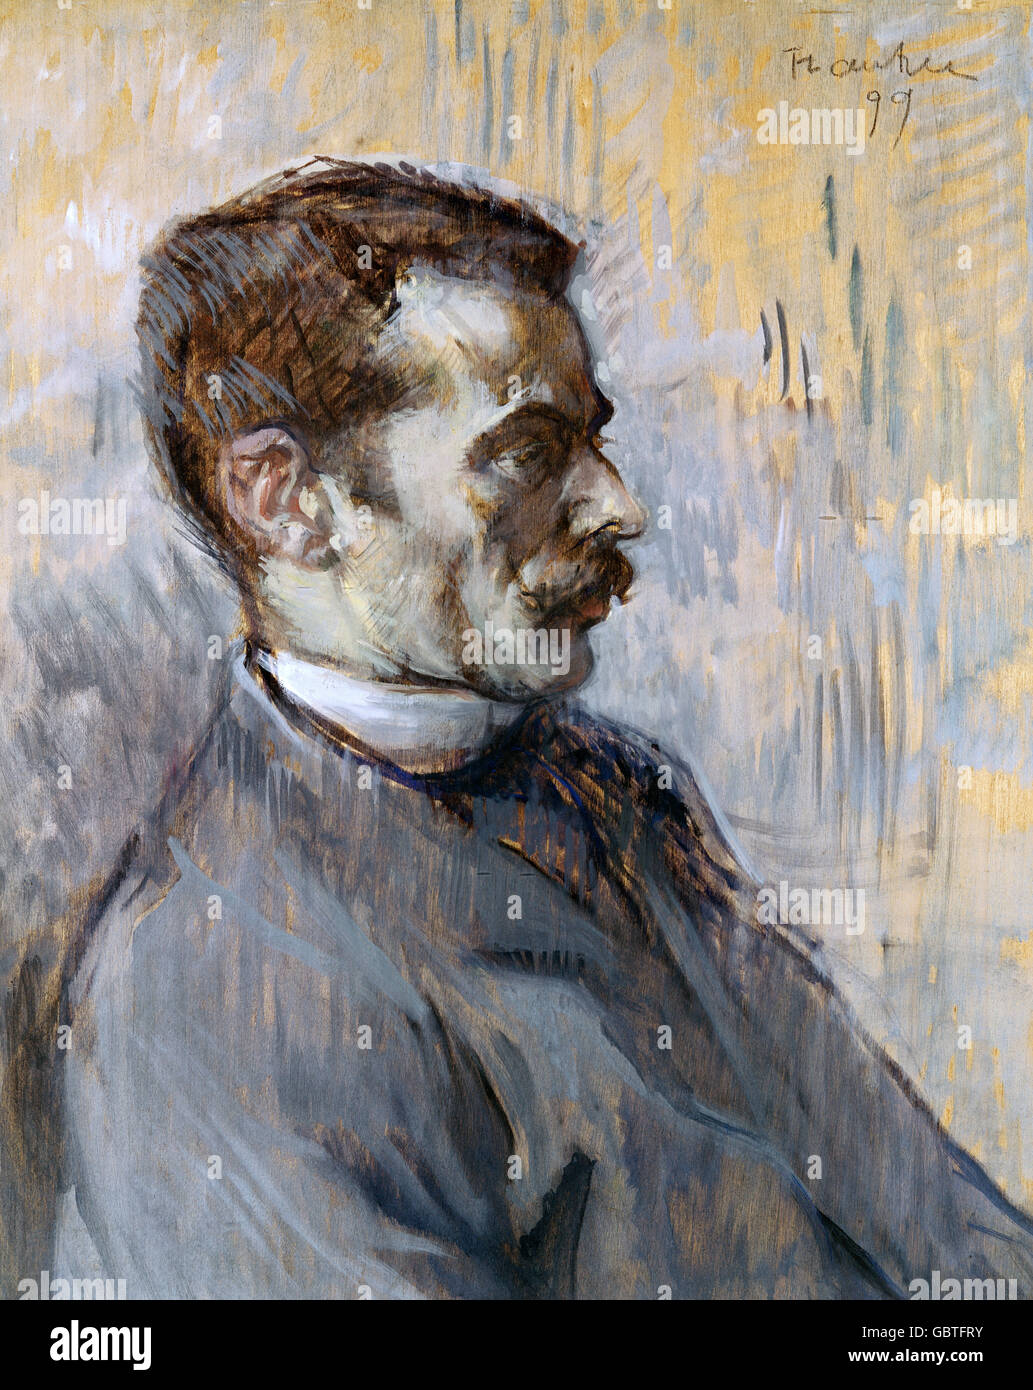 fine arts, Toulouse-Lautrec, Henri de (1864 - 1901), painting, "Mon Gardien" (My Caretaker), 1899, Museum Albi, Stock Photo